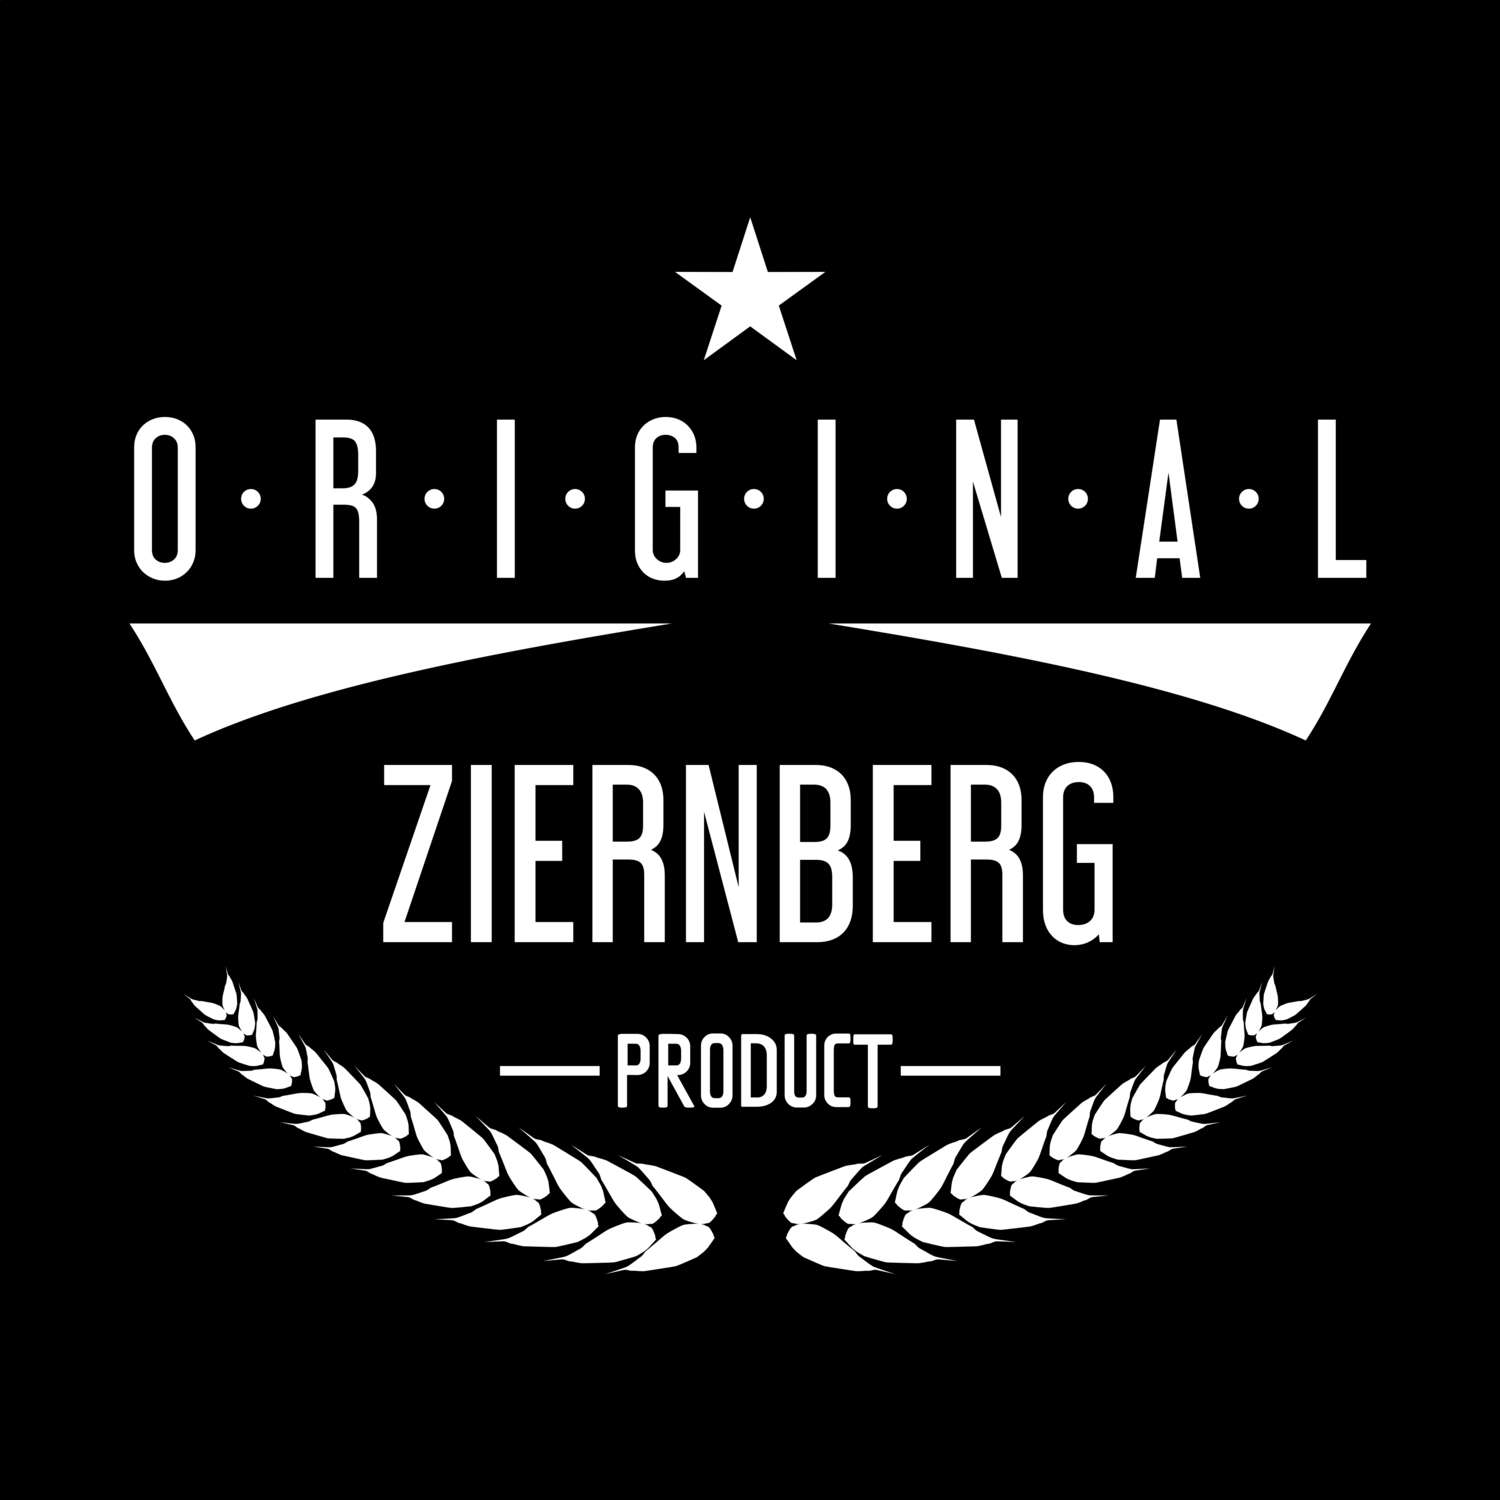 Ziernberg T-Shirt »Original Product«